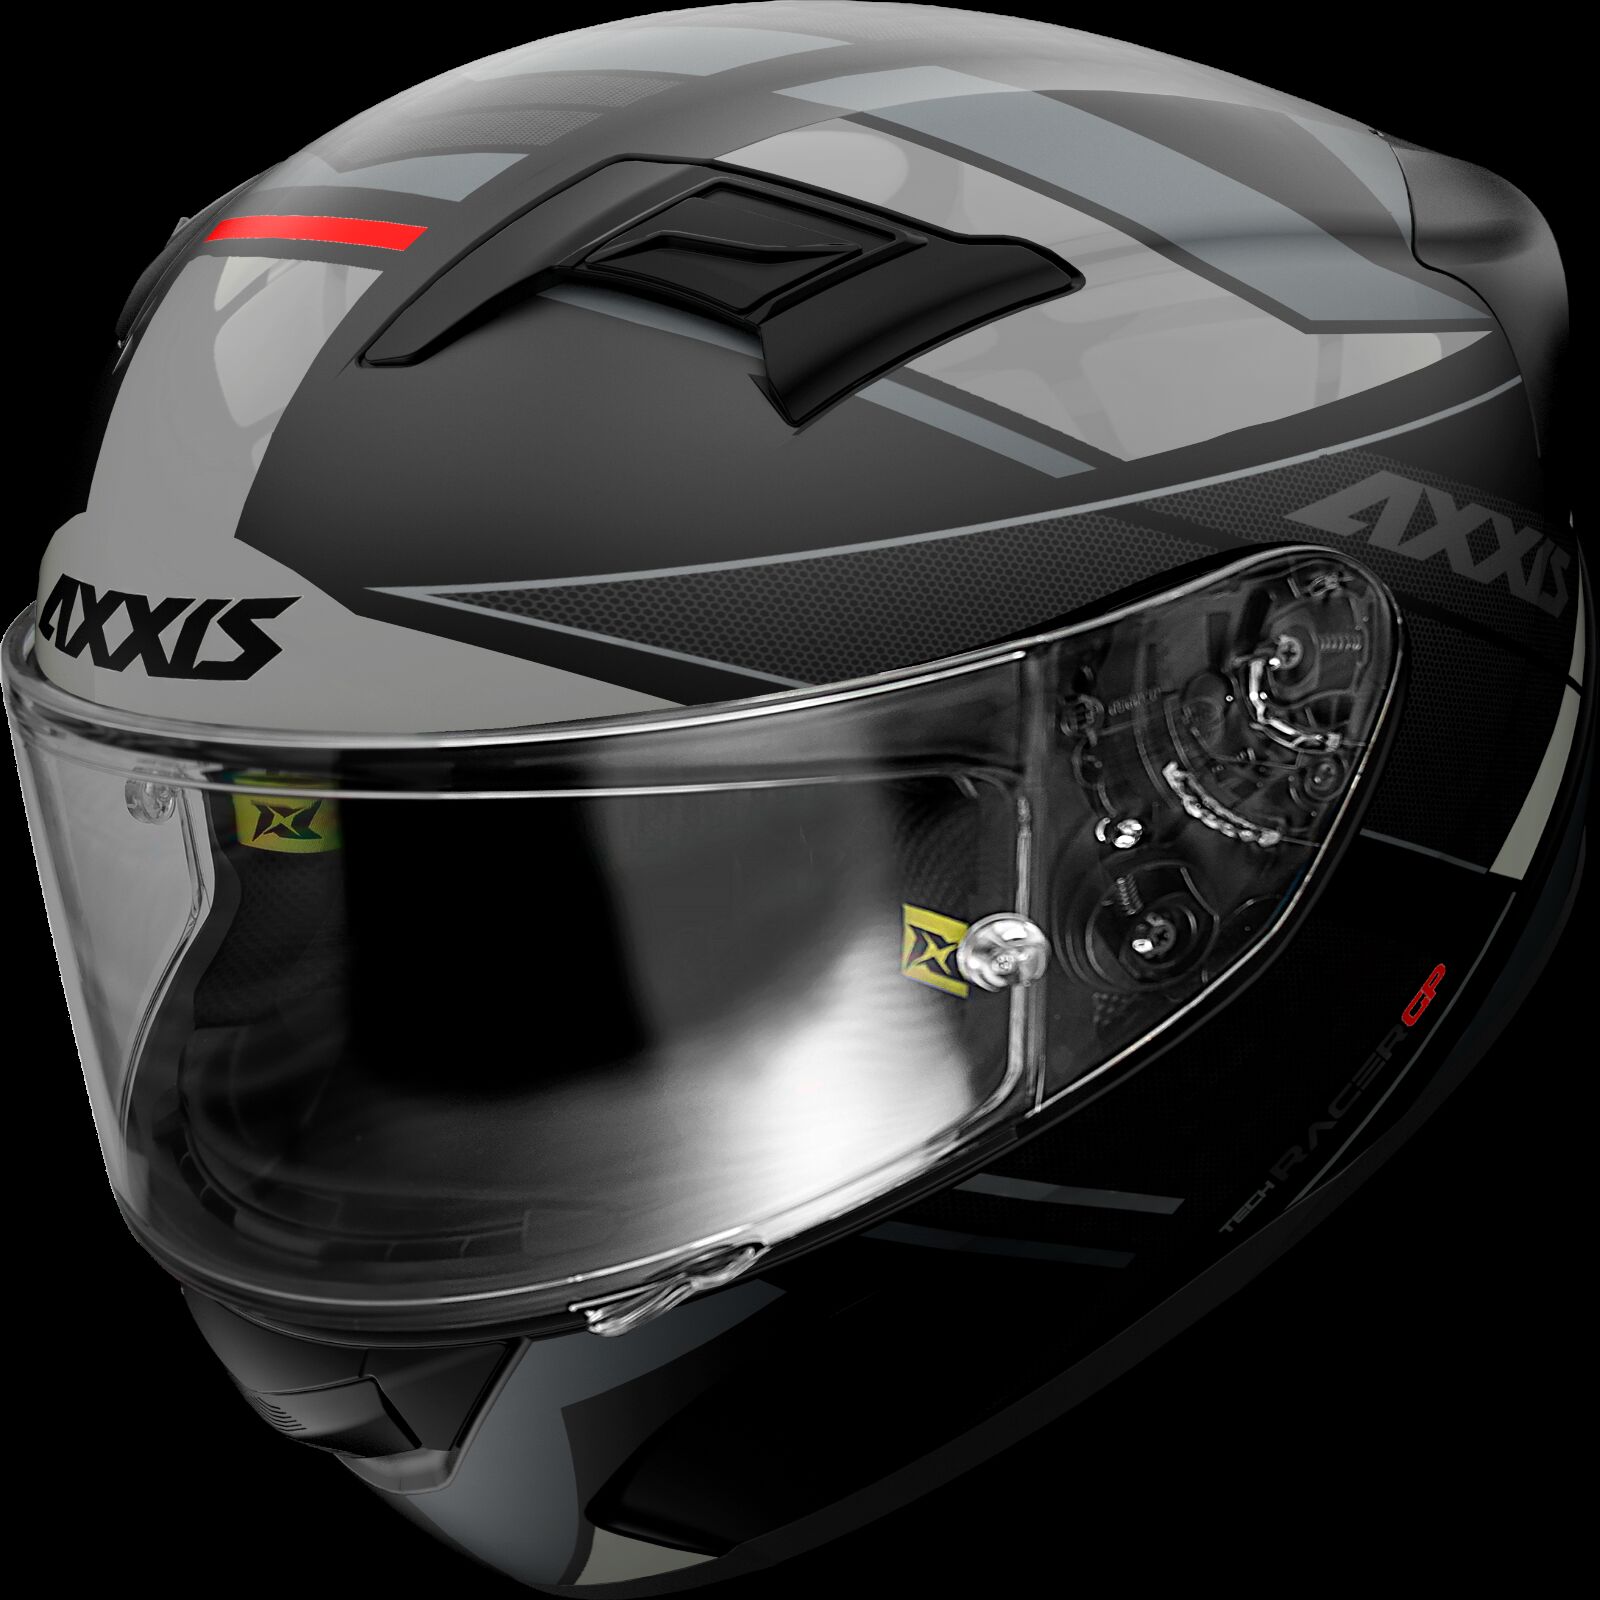 Obrázek produktu Integrální helma AXXIS GP RACER SV FIBER TECH matná šedá XS 41048971253